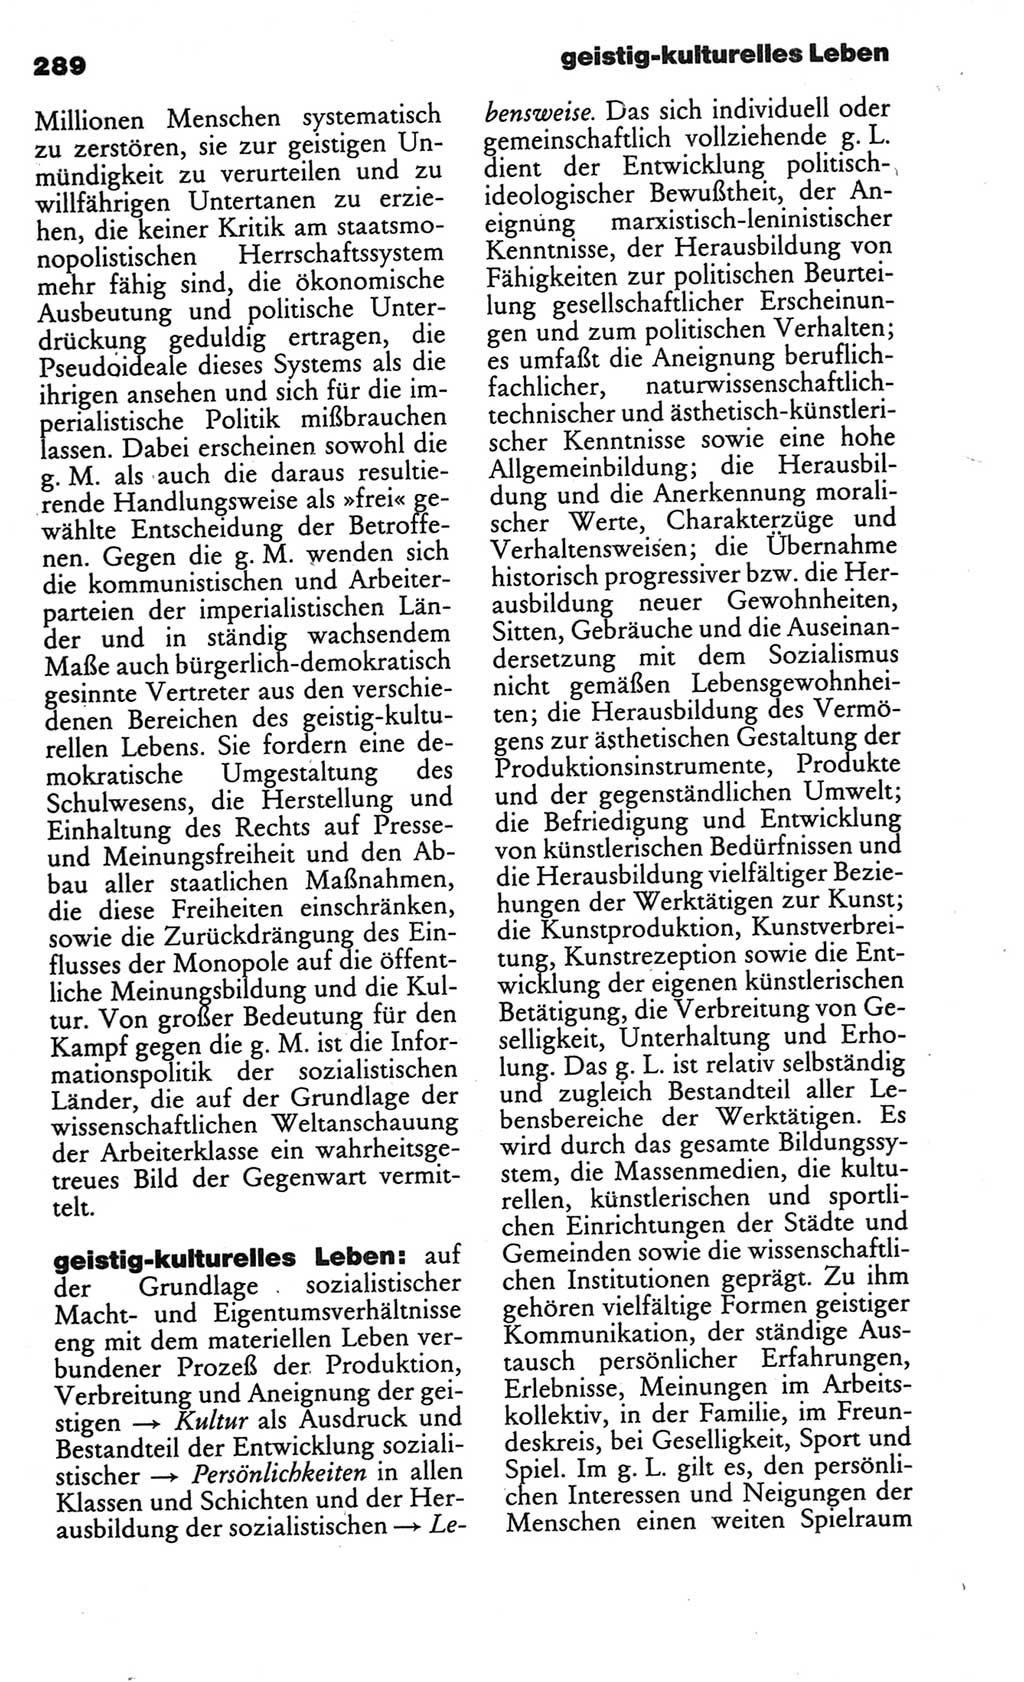 Kleines politisches Wörterbuch [Deutsche Demokratische Republik (DDR)] 1986, Seite 289 (Kl. pol. Wb. DDR 1986, S. 289)